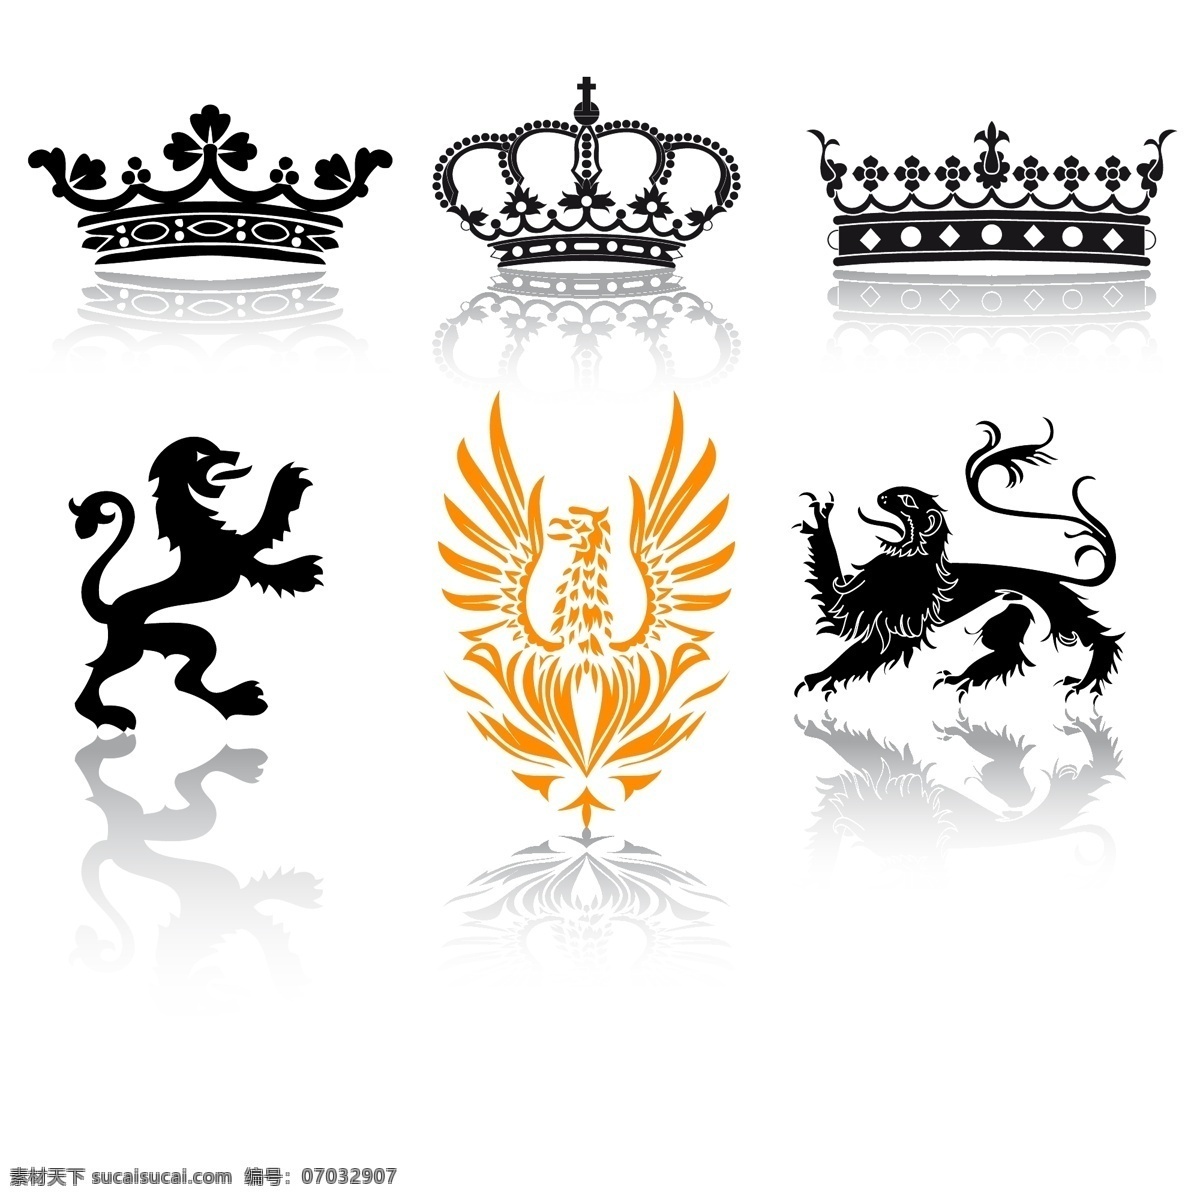 皇冠狮子图标 图标 抽象标志符号 权力 皇冠 王冠 骏马 狮子 图腾 盾牌 企业公司标志 logo设计 矢量 标志图标 网页小图标